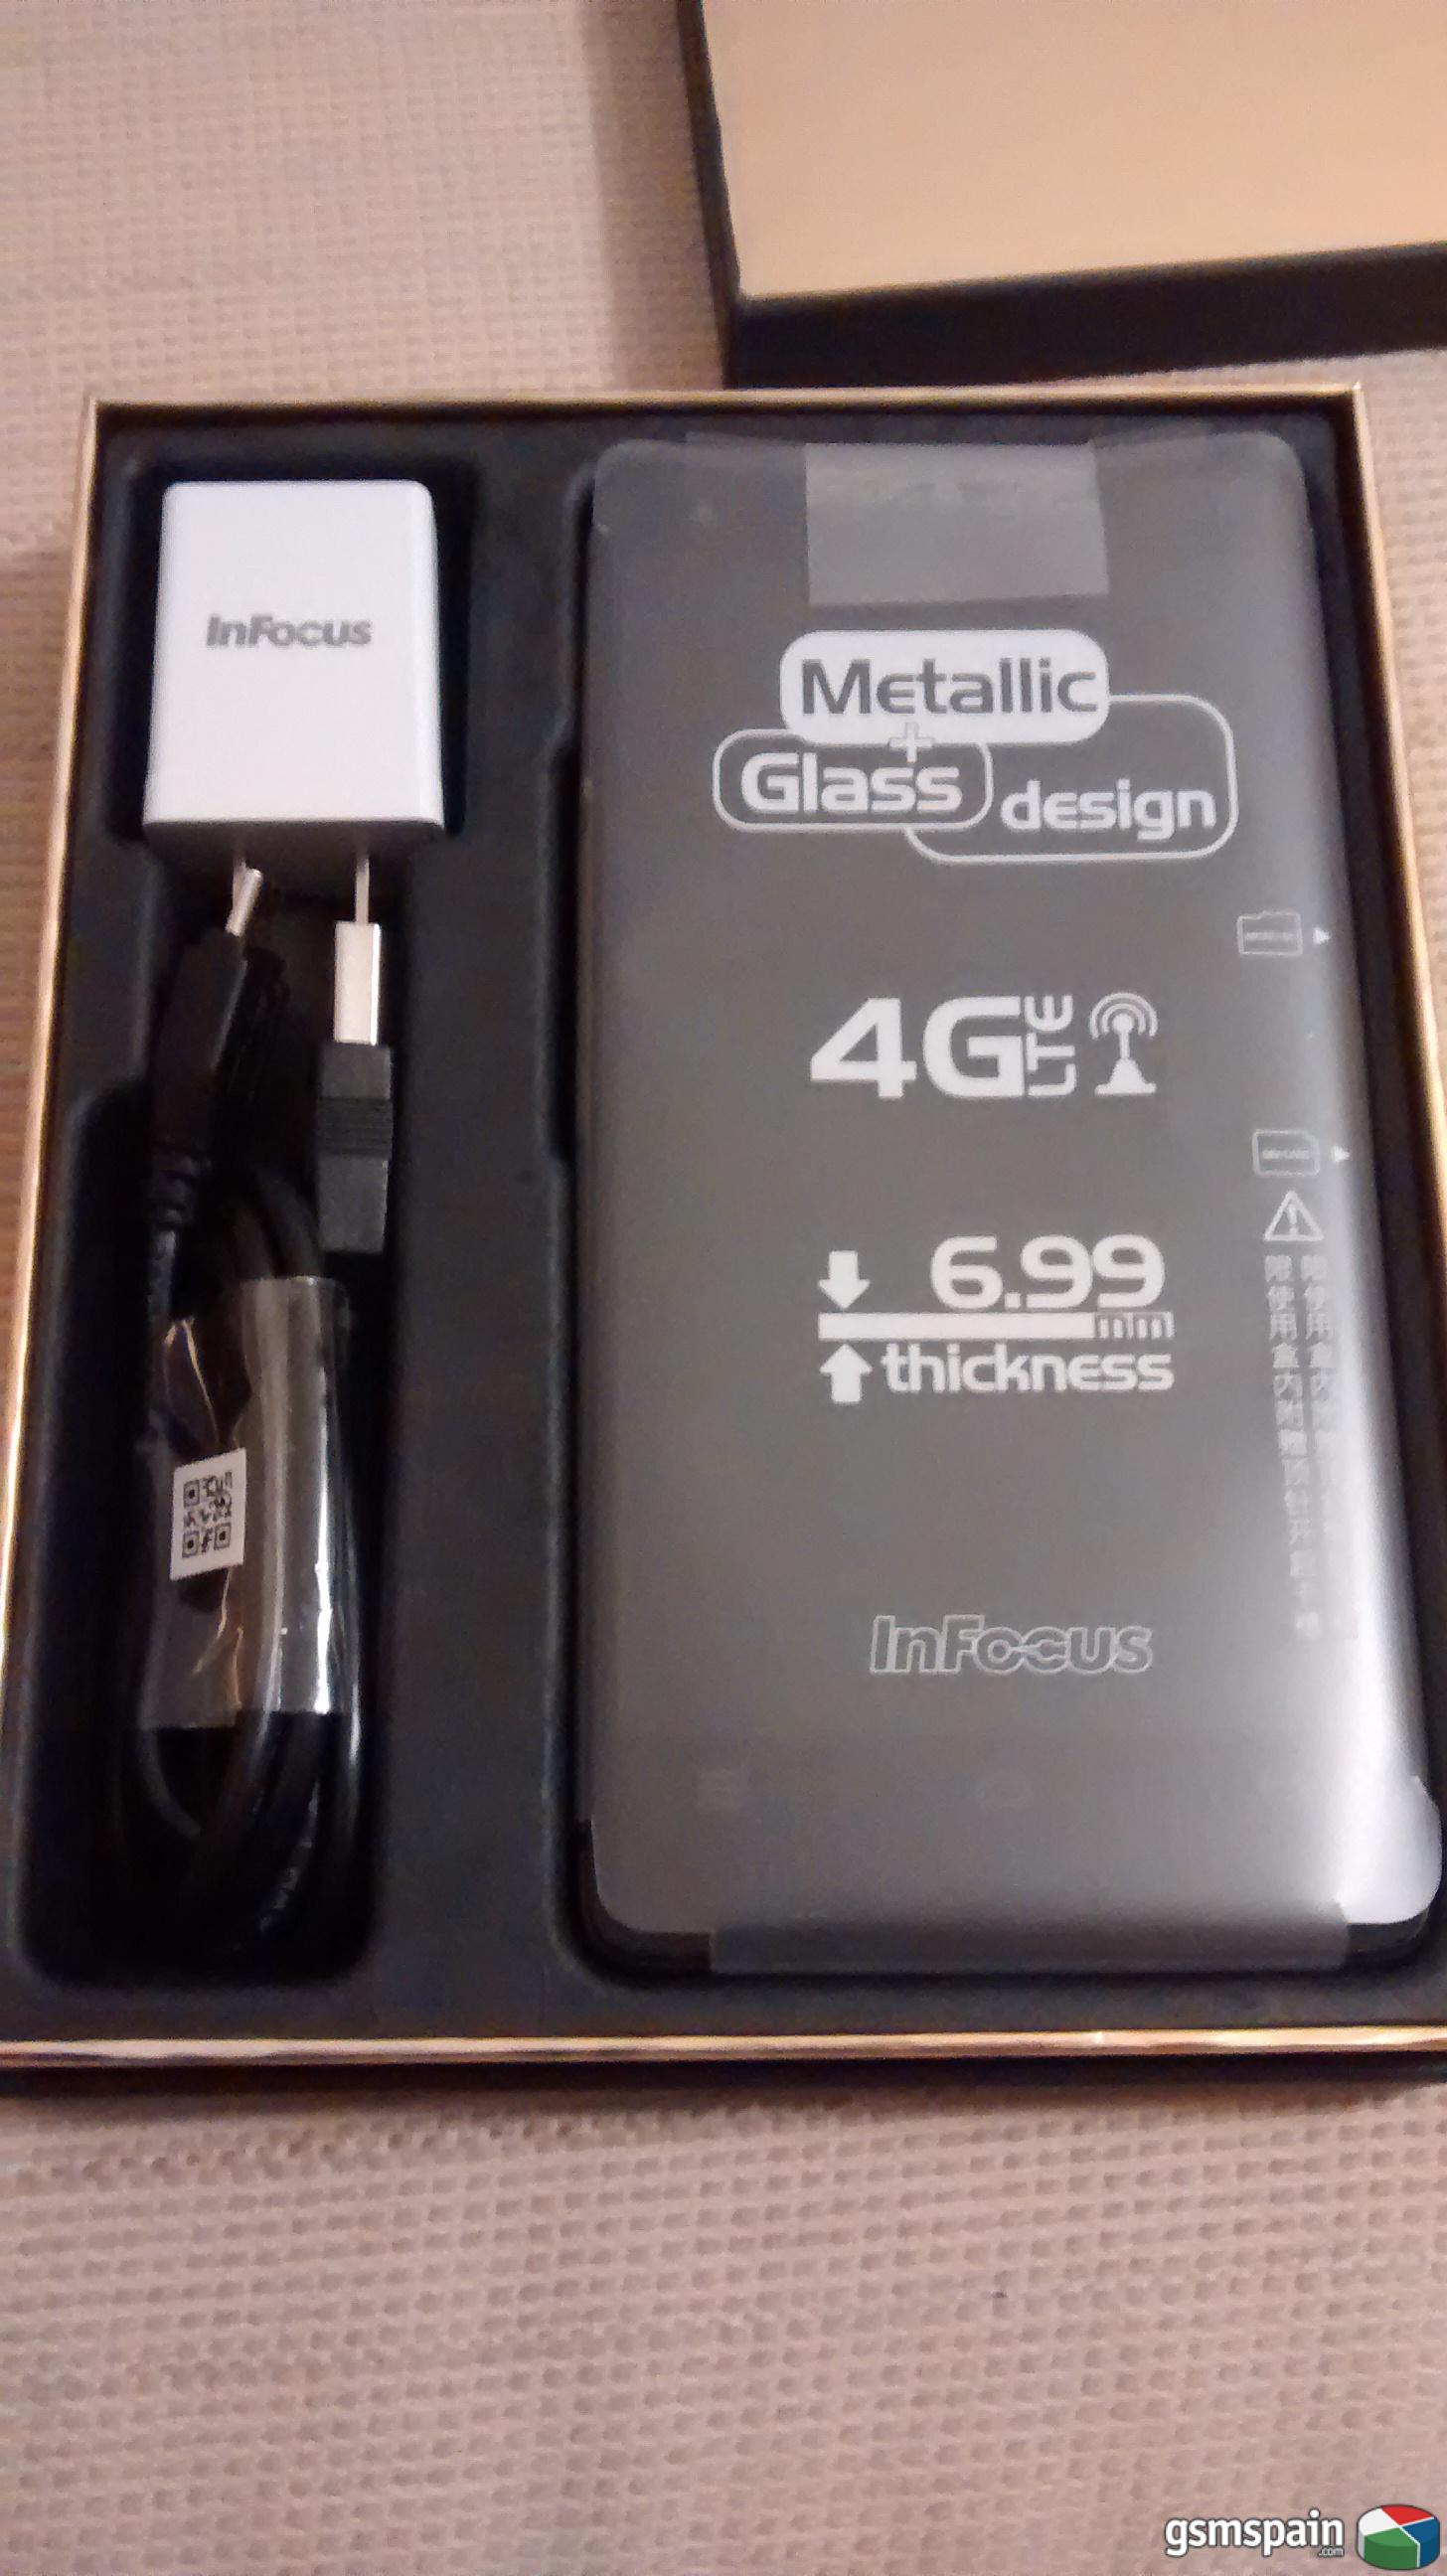 [VENDO] Infocus M810T - Snapdragon 801 - 2GB Ram - 5,5" FullHD - Materiales Premium